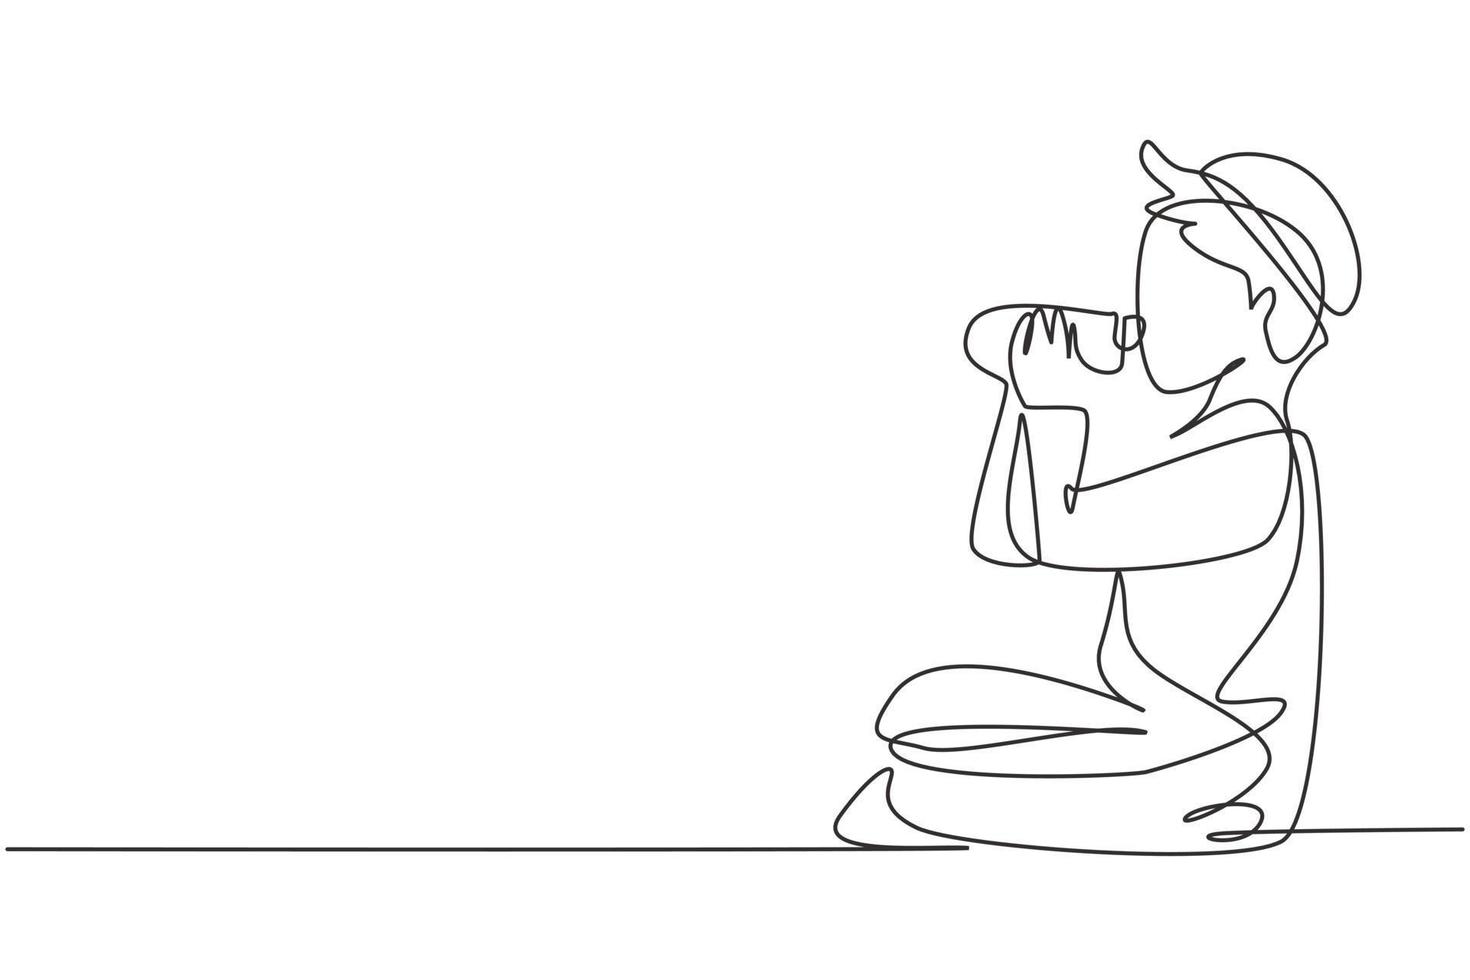 enkele een lijntekening Arabische jongen zittend terwijl hij geniet van een fles verse melk om zijn lichaamsvoeding te vervullen. gezondheid en groei van het kind. moderne doorlopende lijn tekenen ontwerp grafische vectorillustratie vector